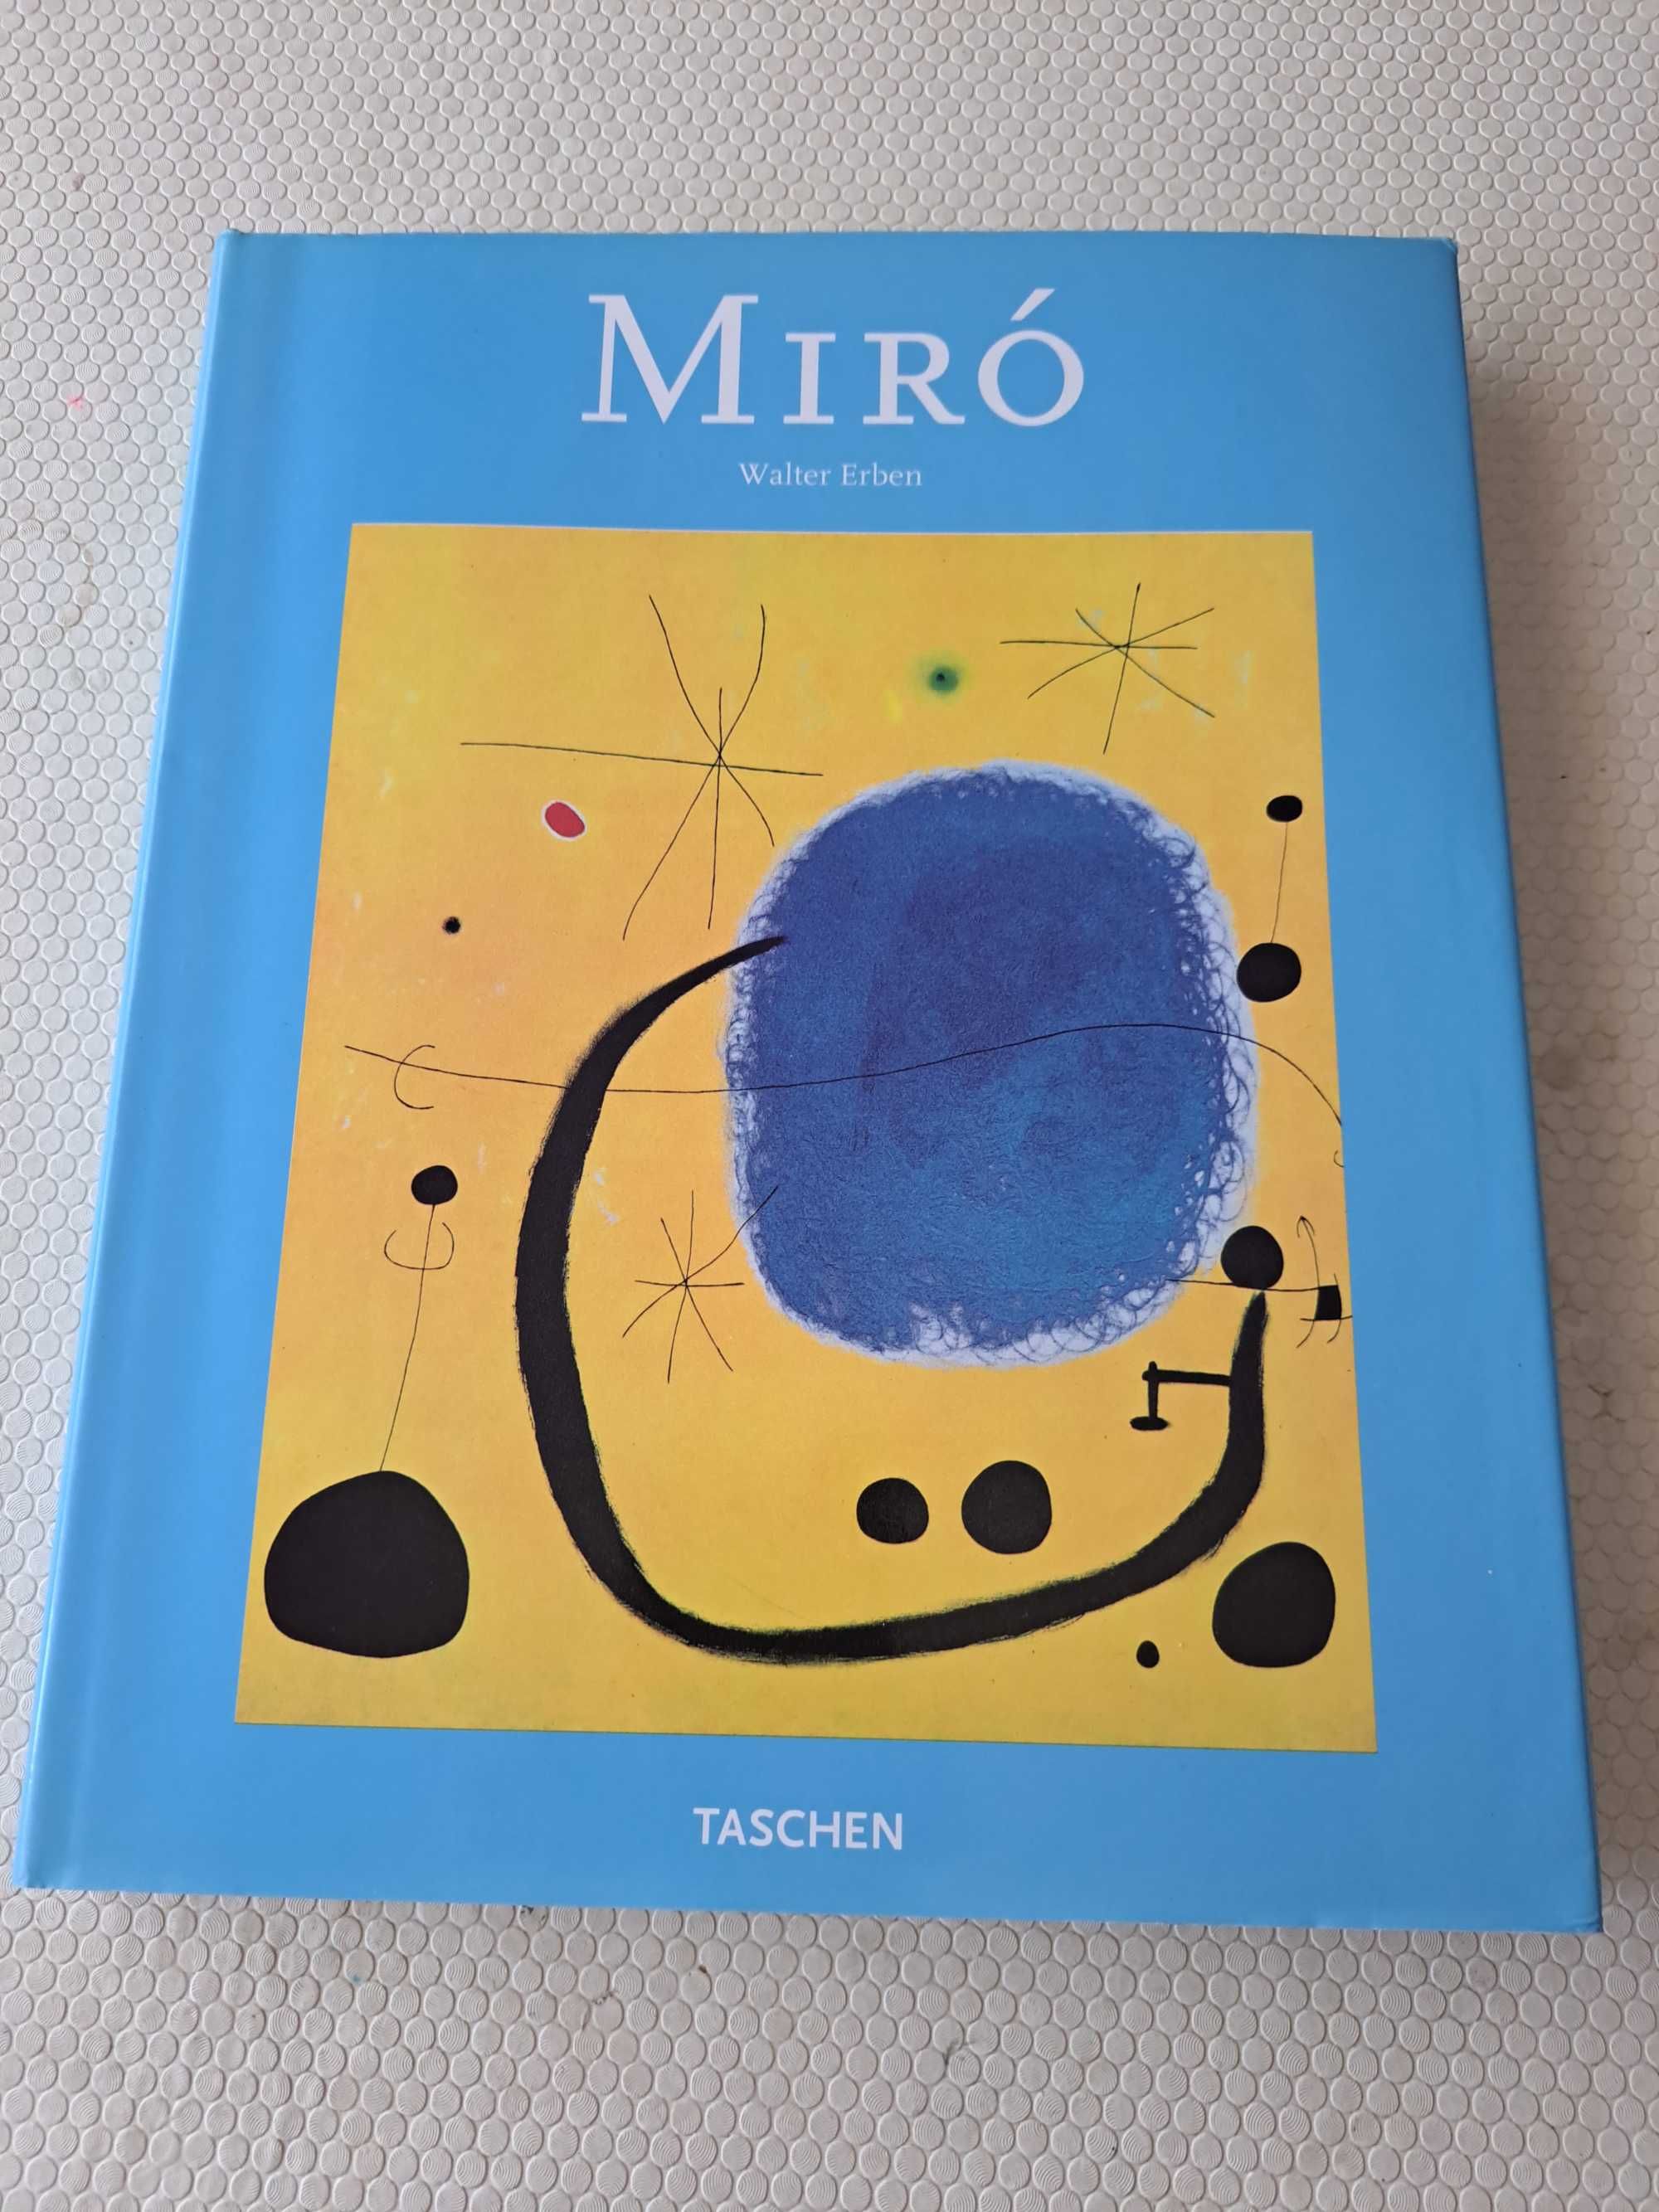 Miró - Walter Erben - TASCHEN